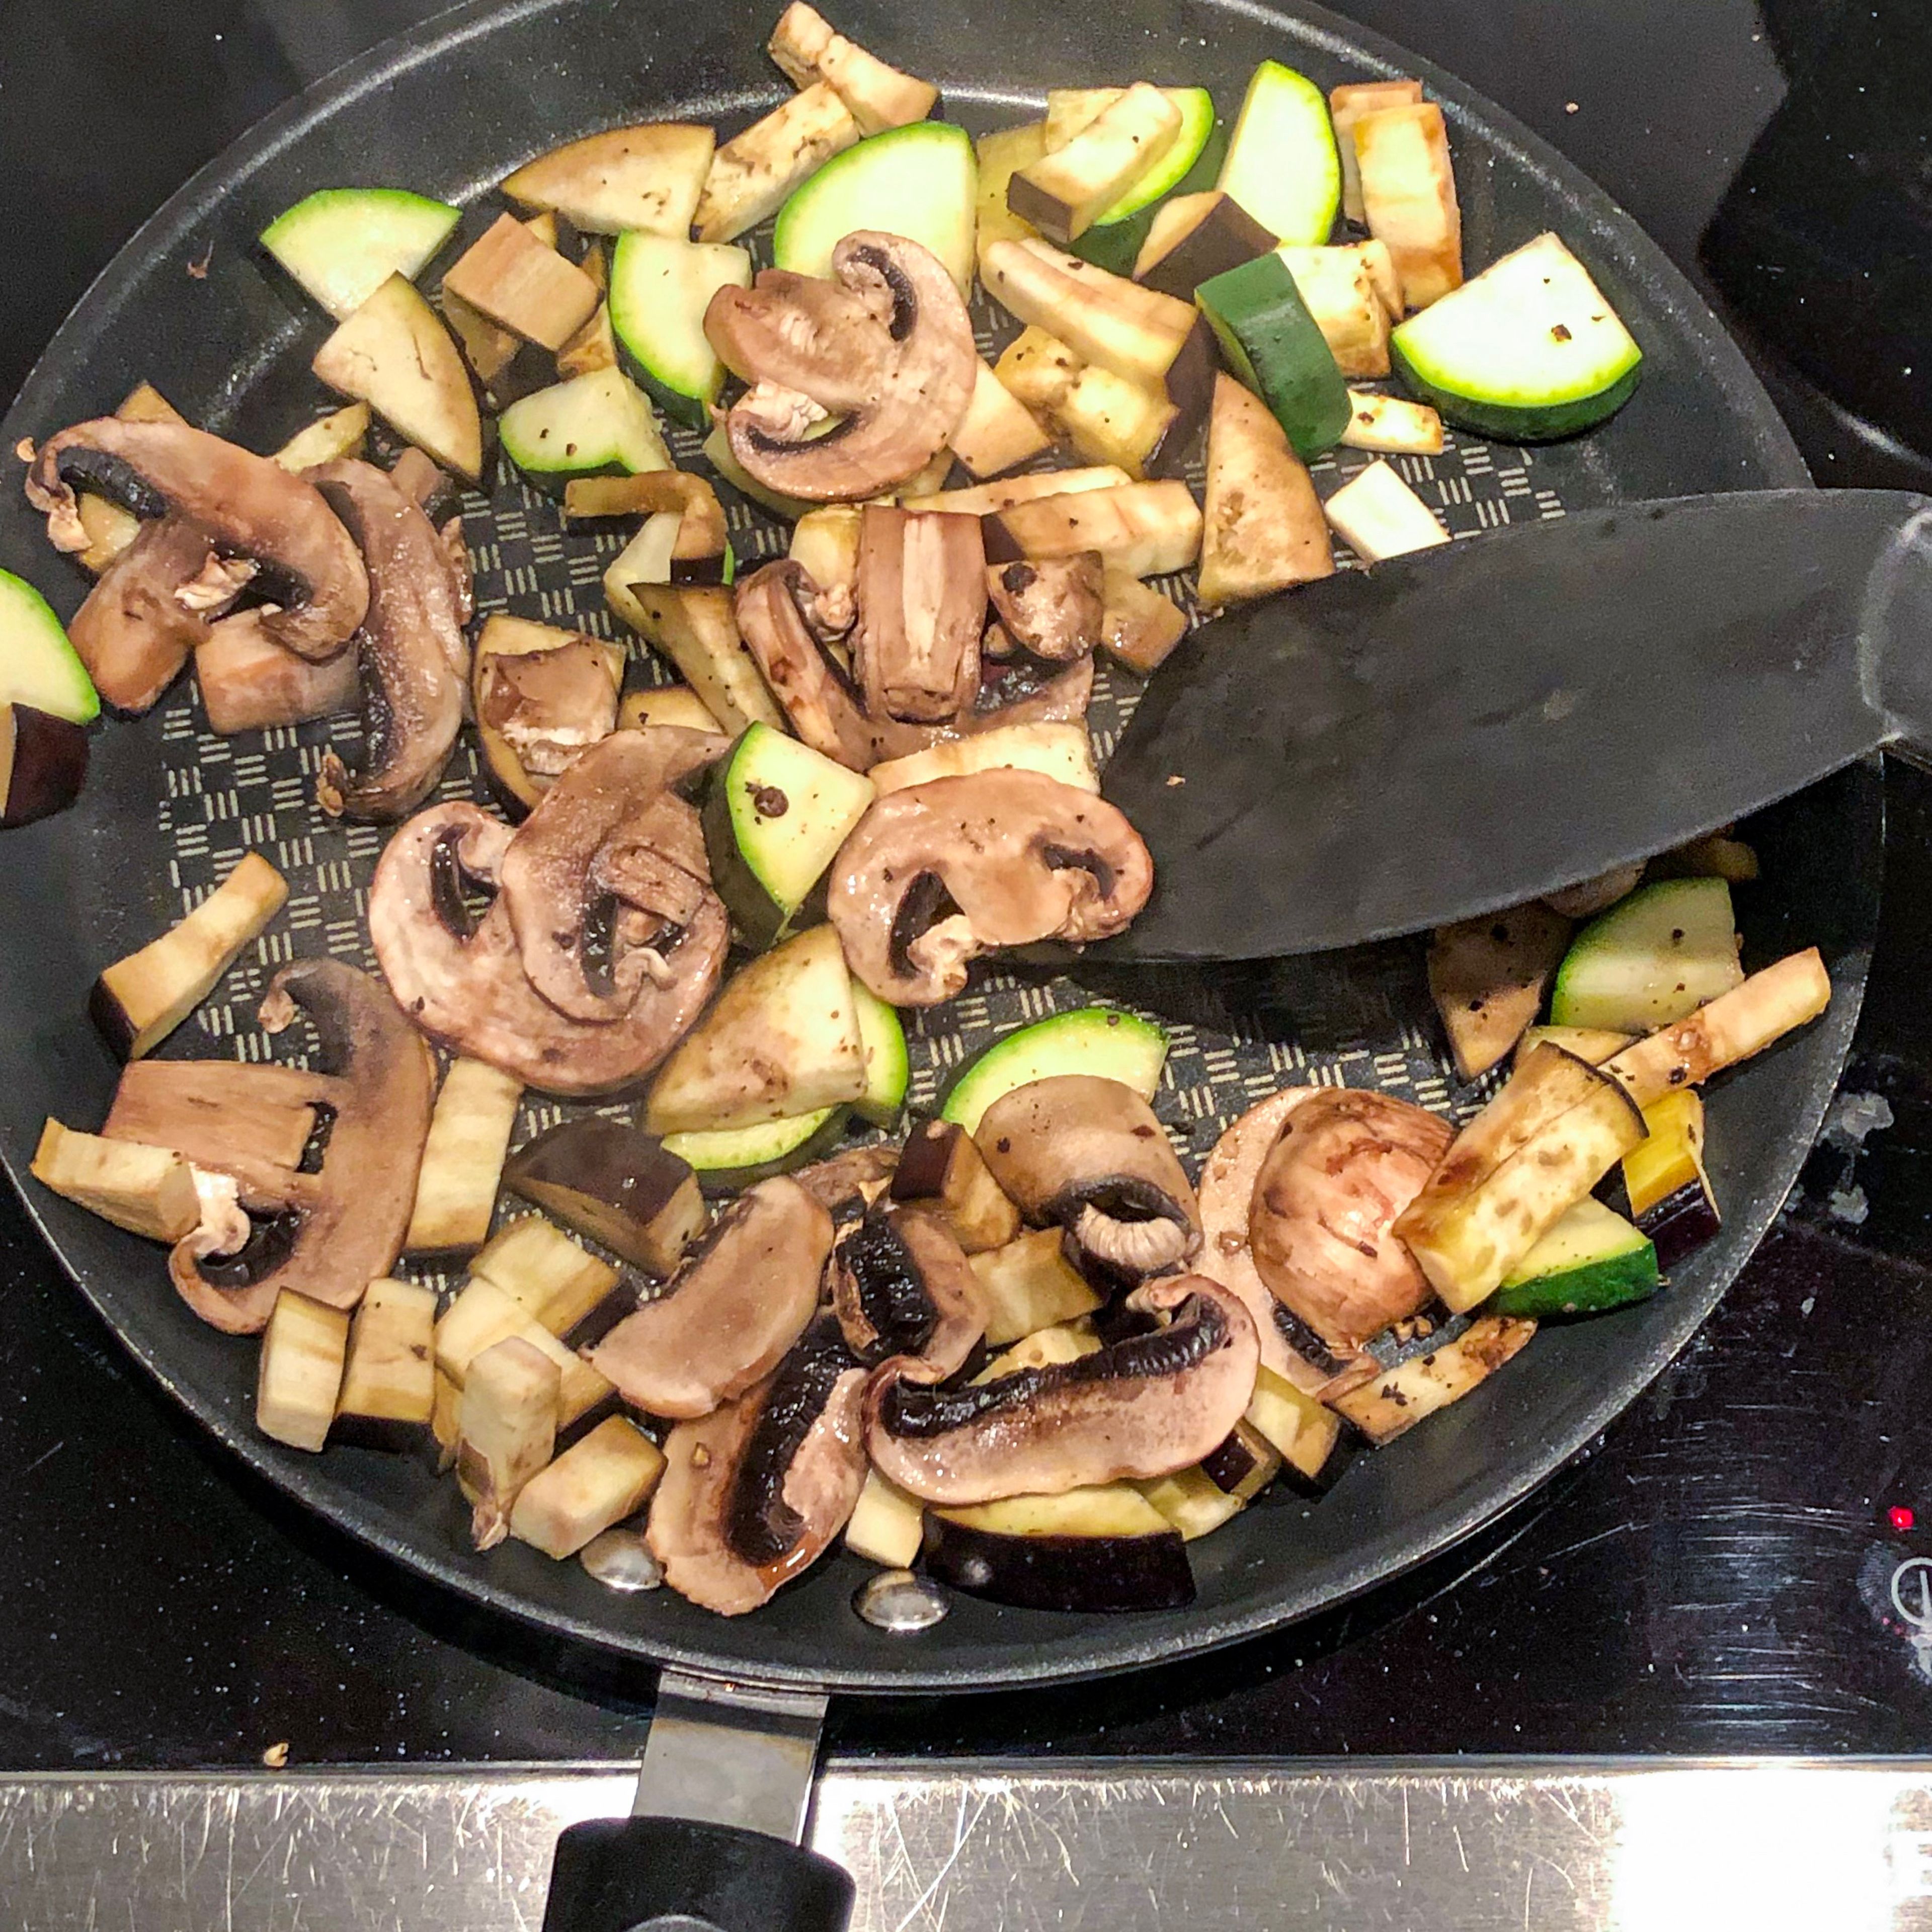 Während das Risotto einkocht, das Gemüse in einer Pfanne anbraten. Mit Salz und Pfeffer würzen und ca 10 Minuten anbraten, bis das Gemüse schön durch ist.